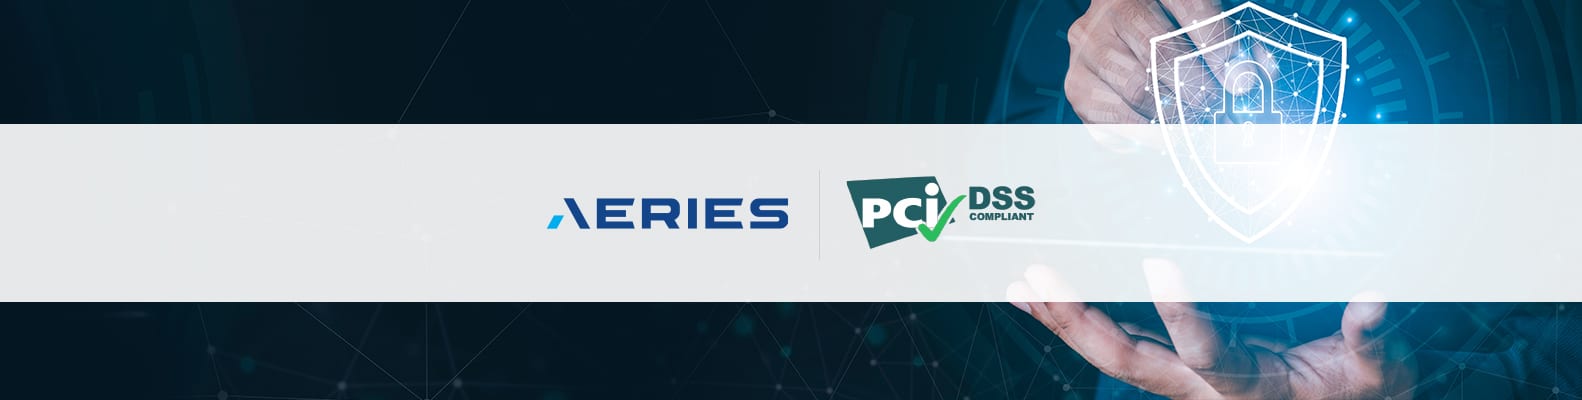 Aeries announces PCI DSS certification